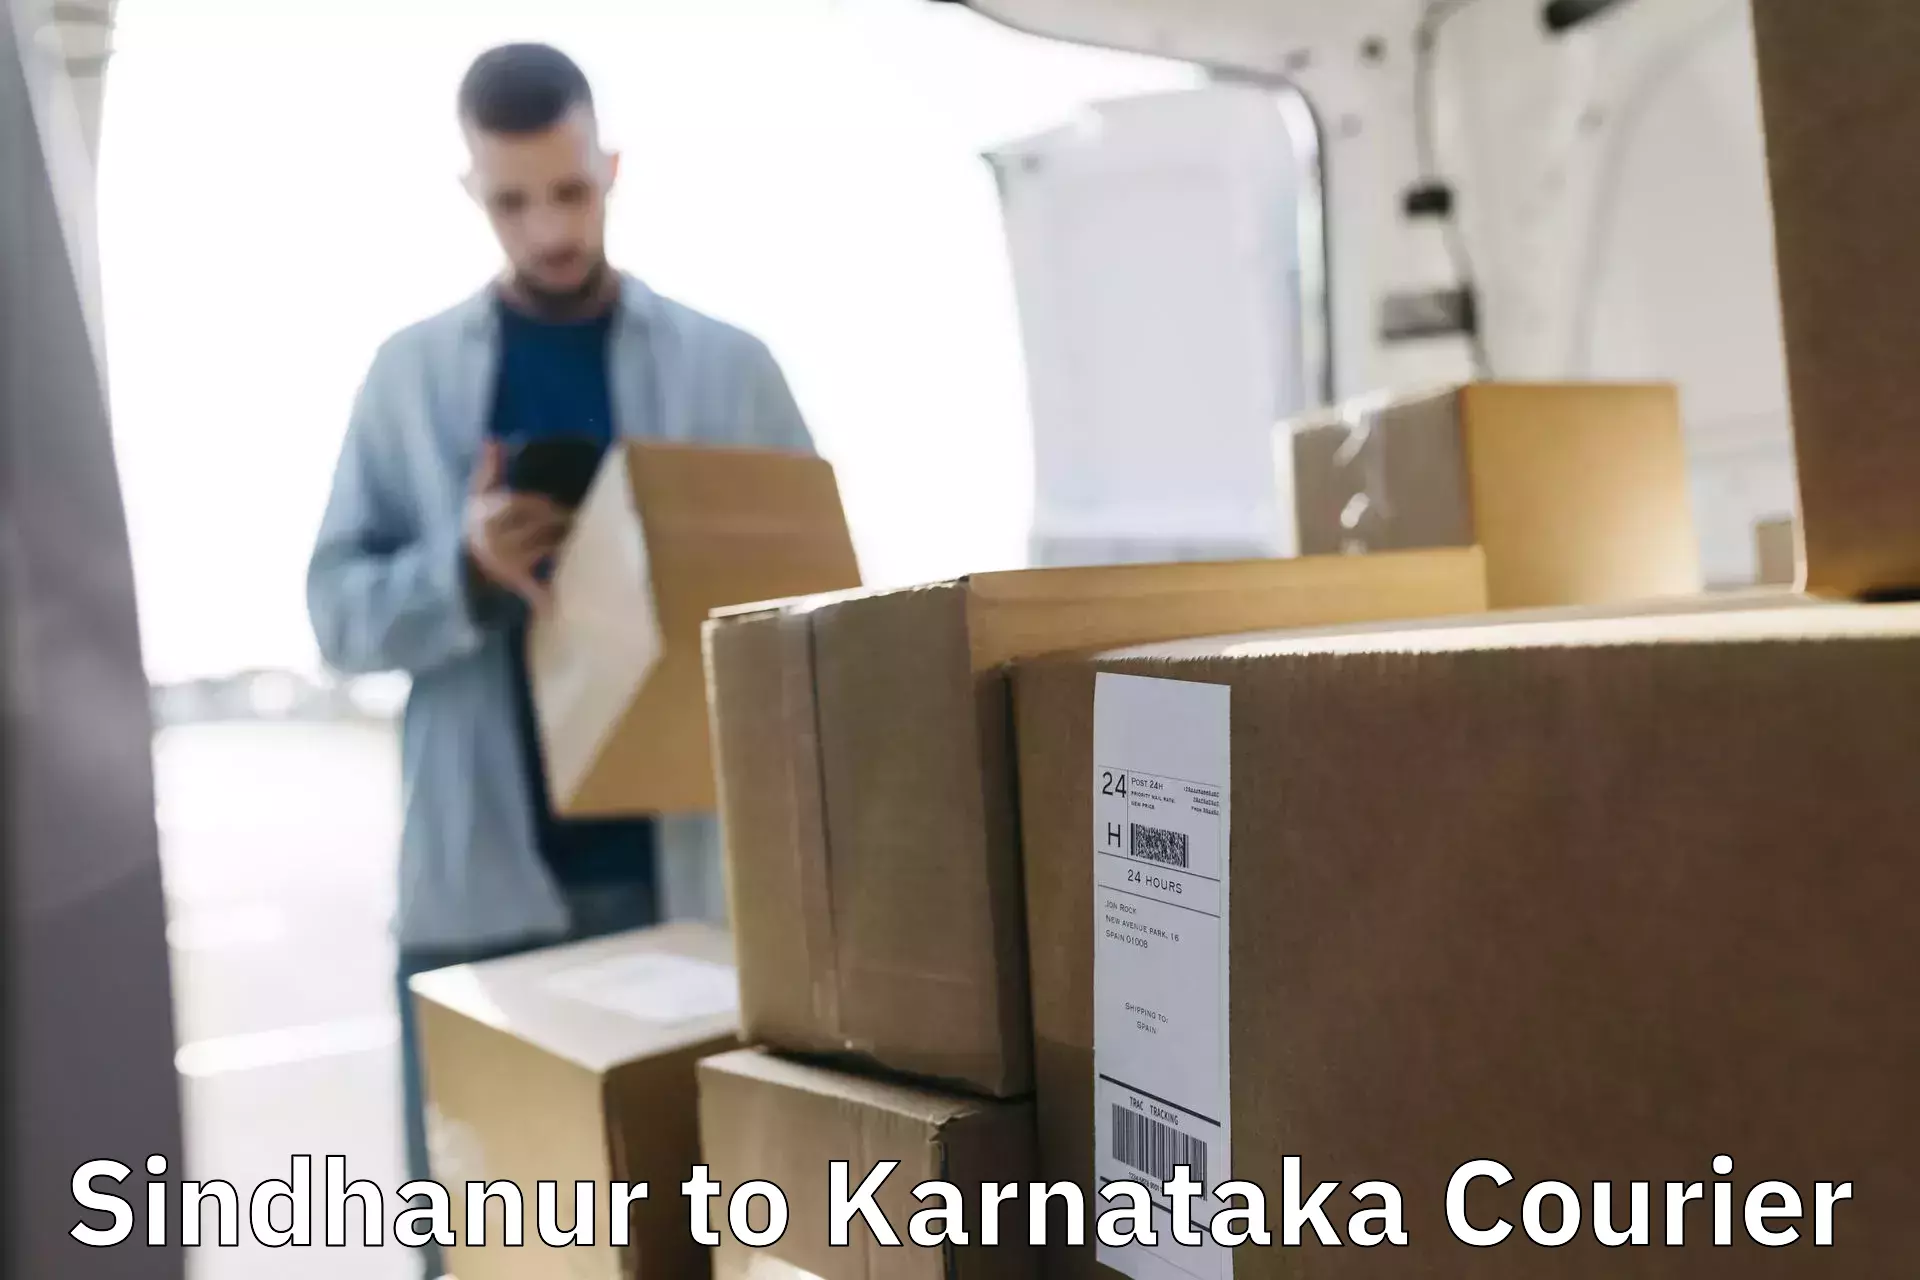 Cargo delivery service Sindhanur to Devanahalli